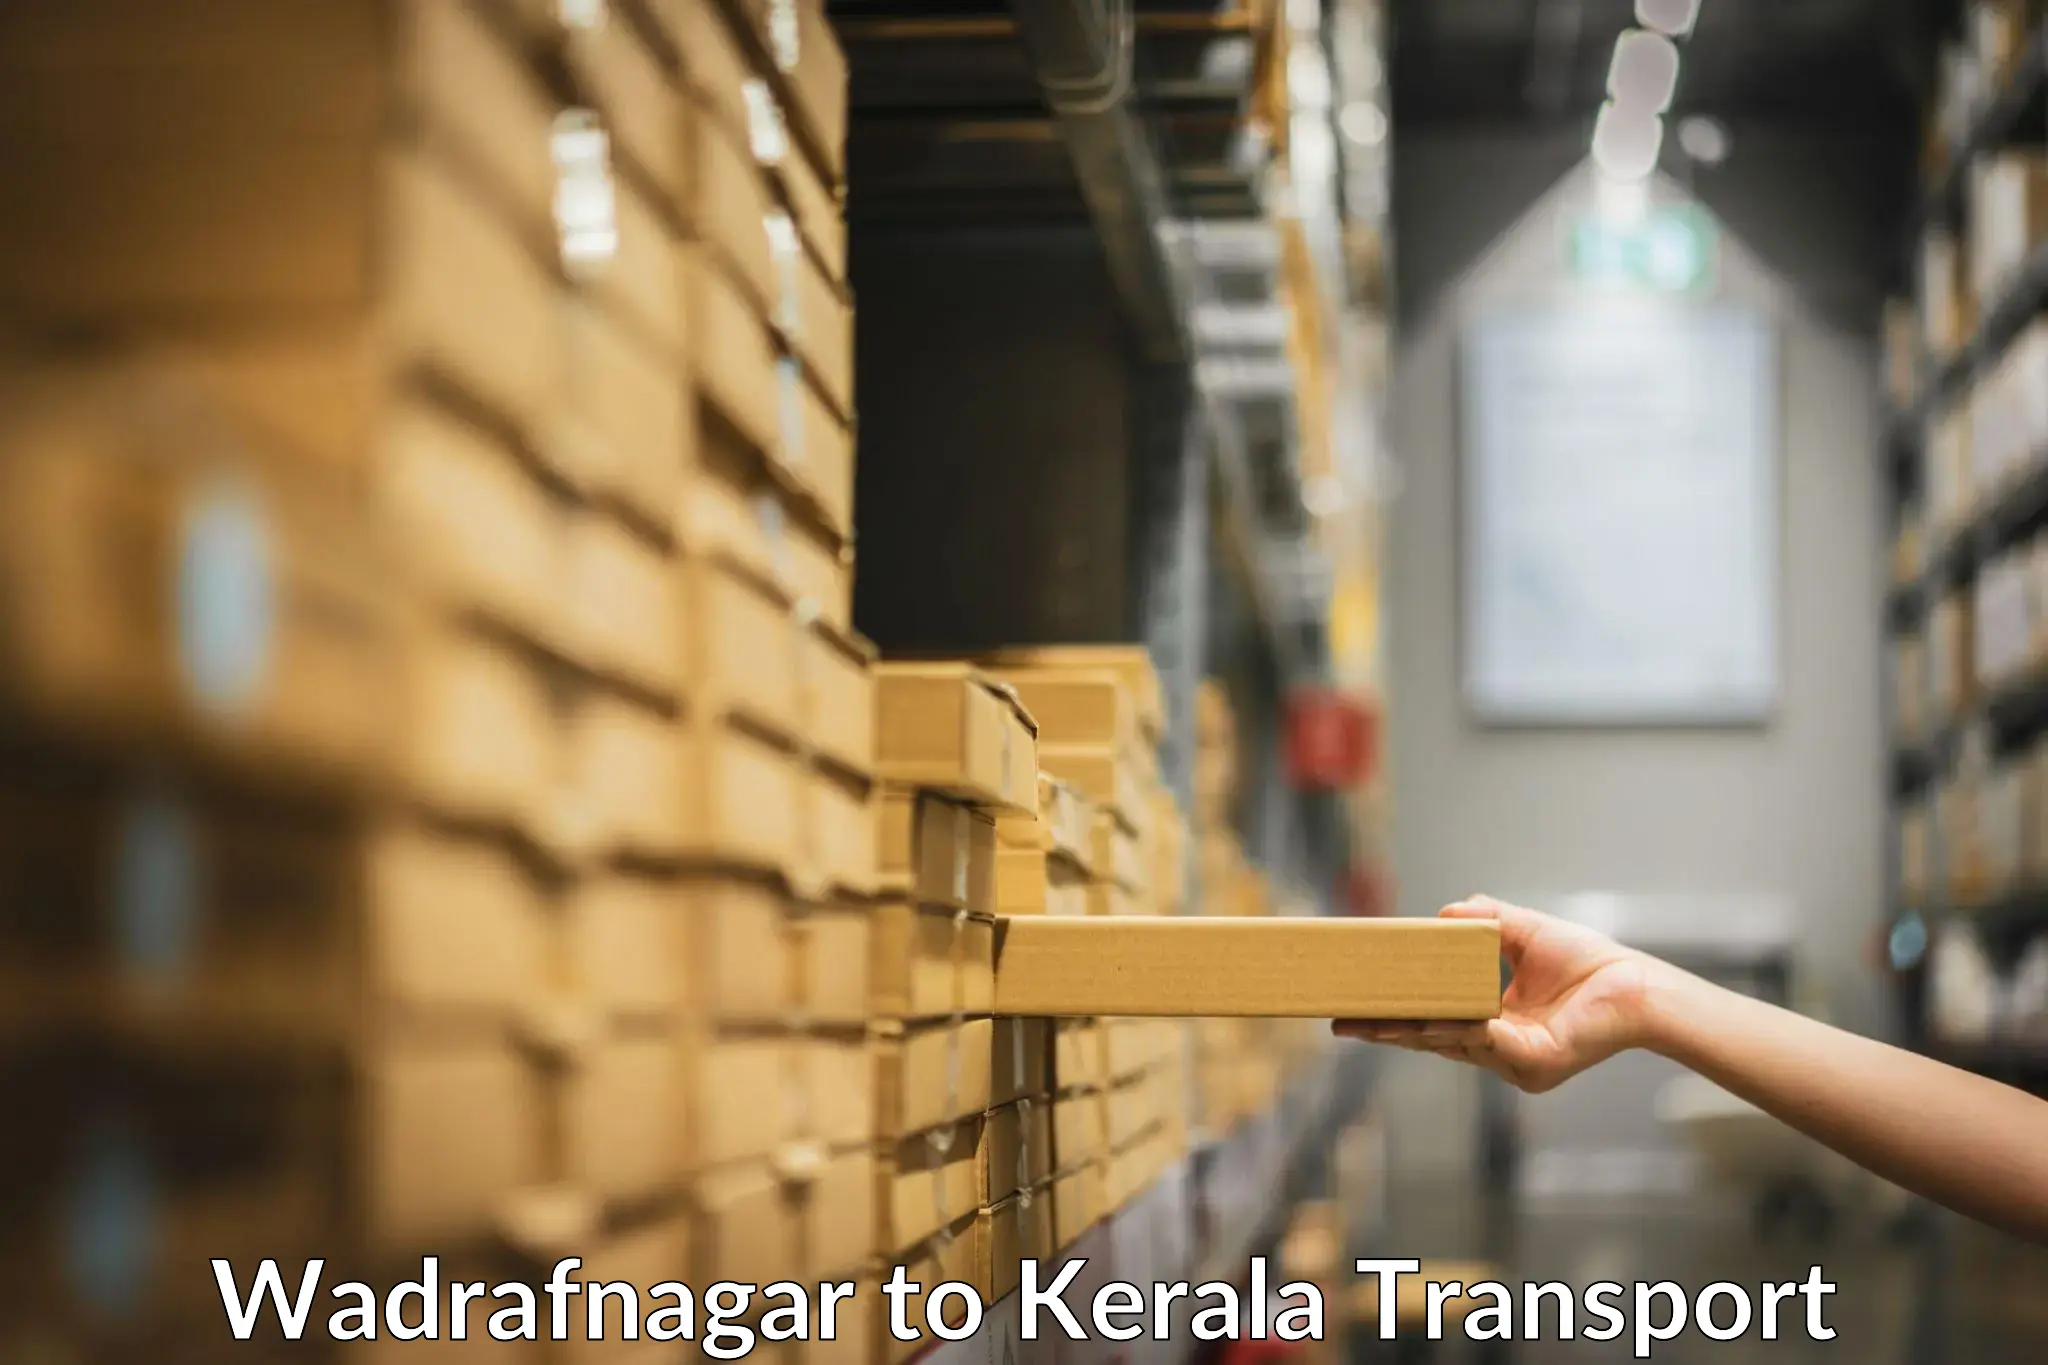 International cargo transportation services Wadrafnagar to Koyilandy